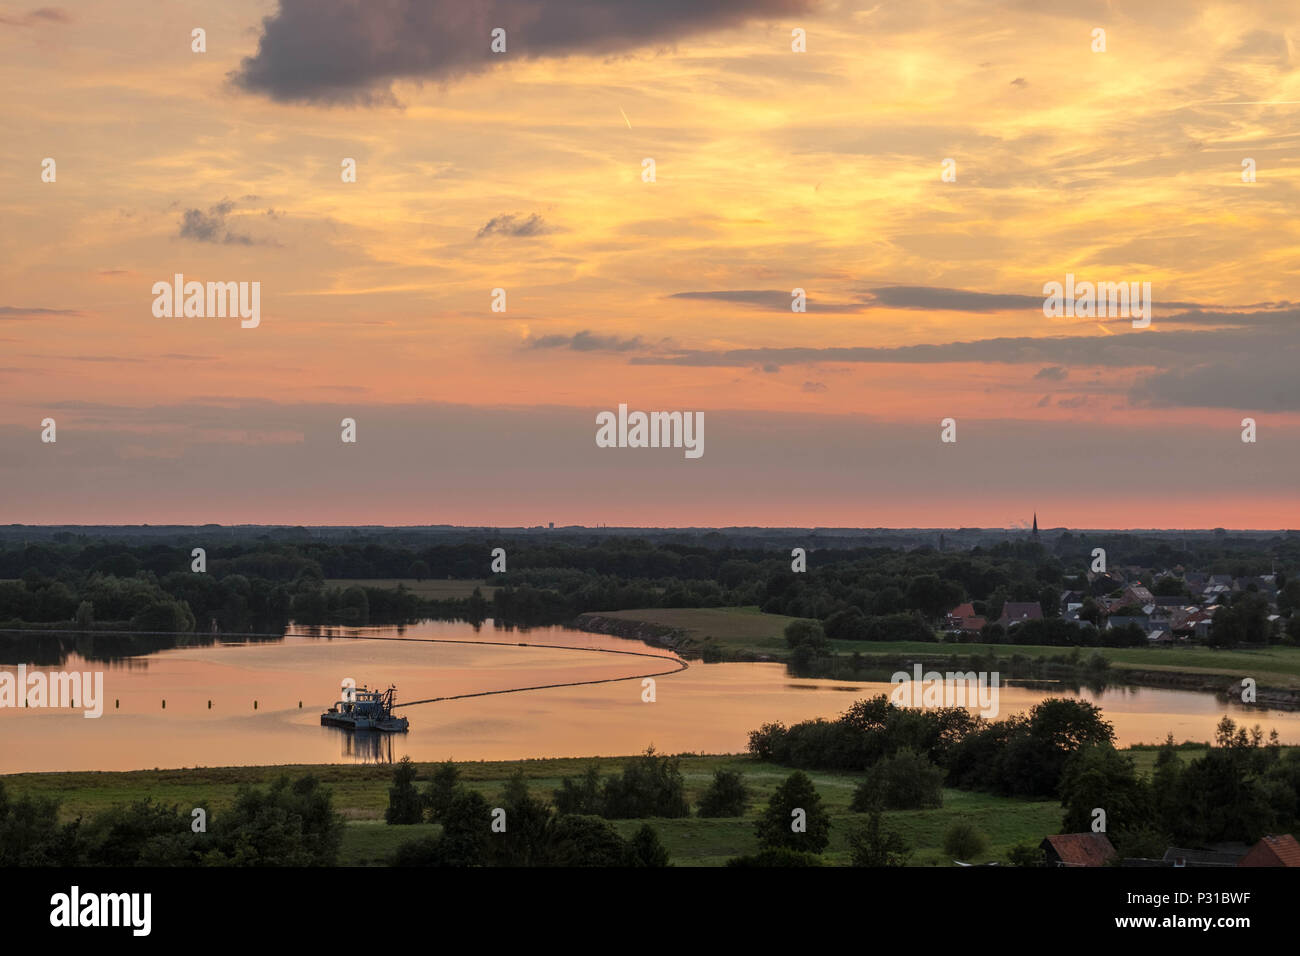 Eines schwimmbaggers liegt auf einem Teich in der Landschaft der Region "Kempen" in Belgien. Auf der rechten Seite sehen Sie die Häuser der Stadt "Essel". Die Sonne untergeht. Stockfoto